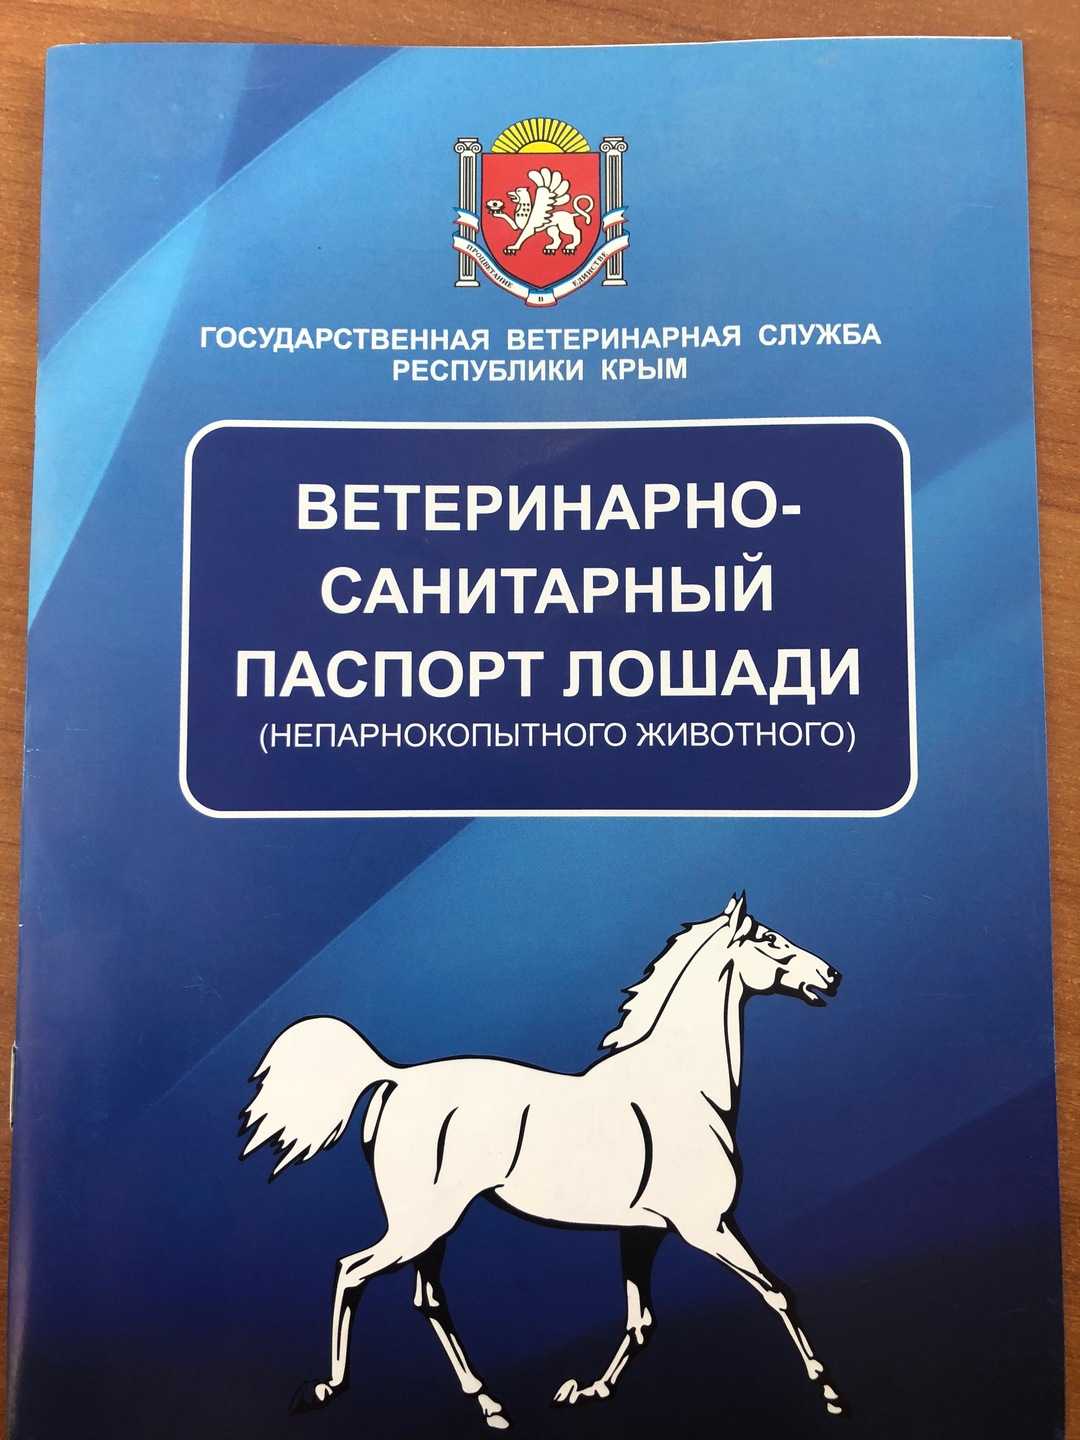 Паспорт спортивной лошади